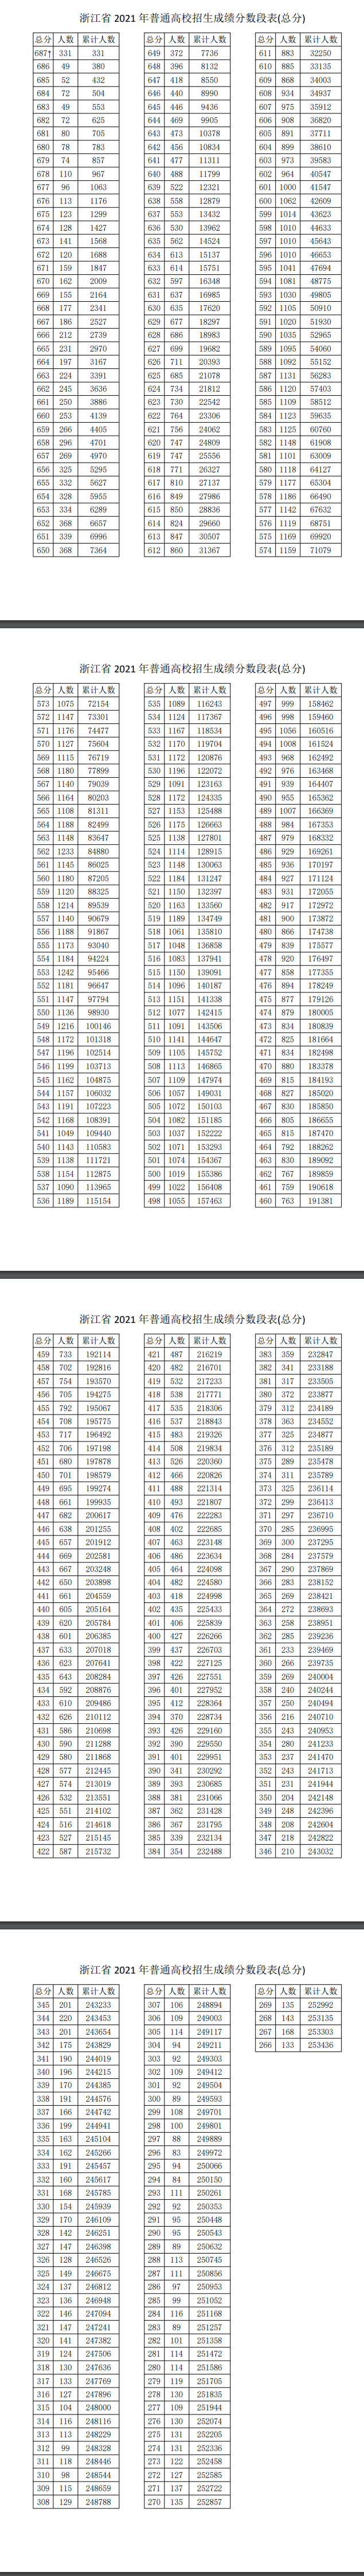 2022浙江高考总成绩一分一段表_高考录取分数线